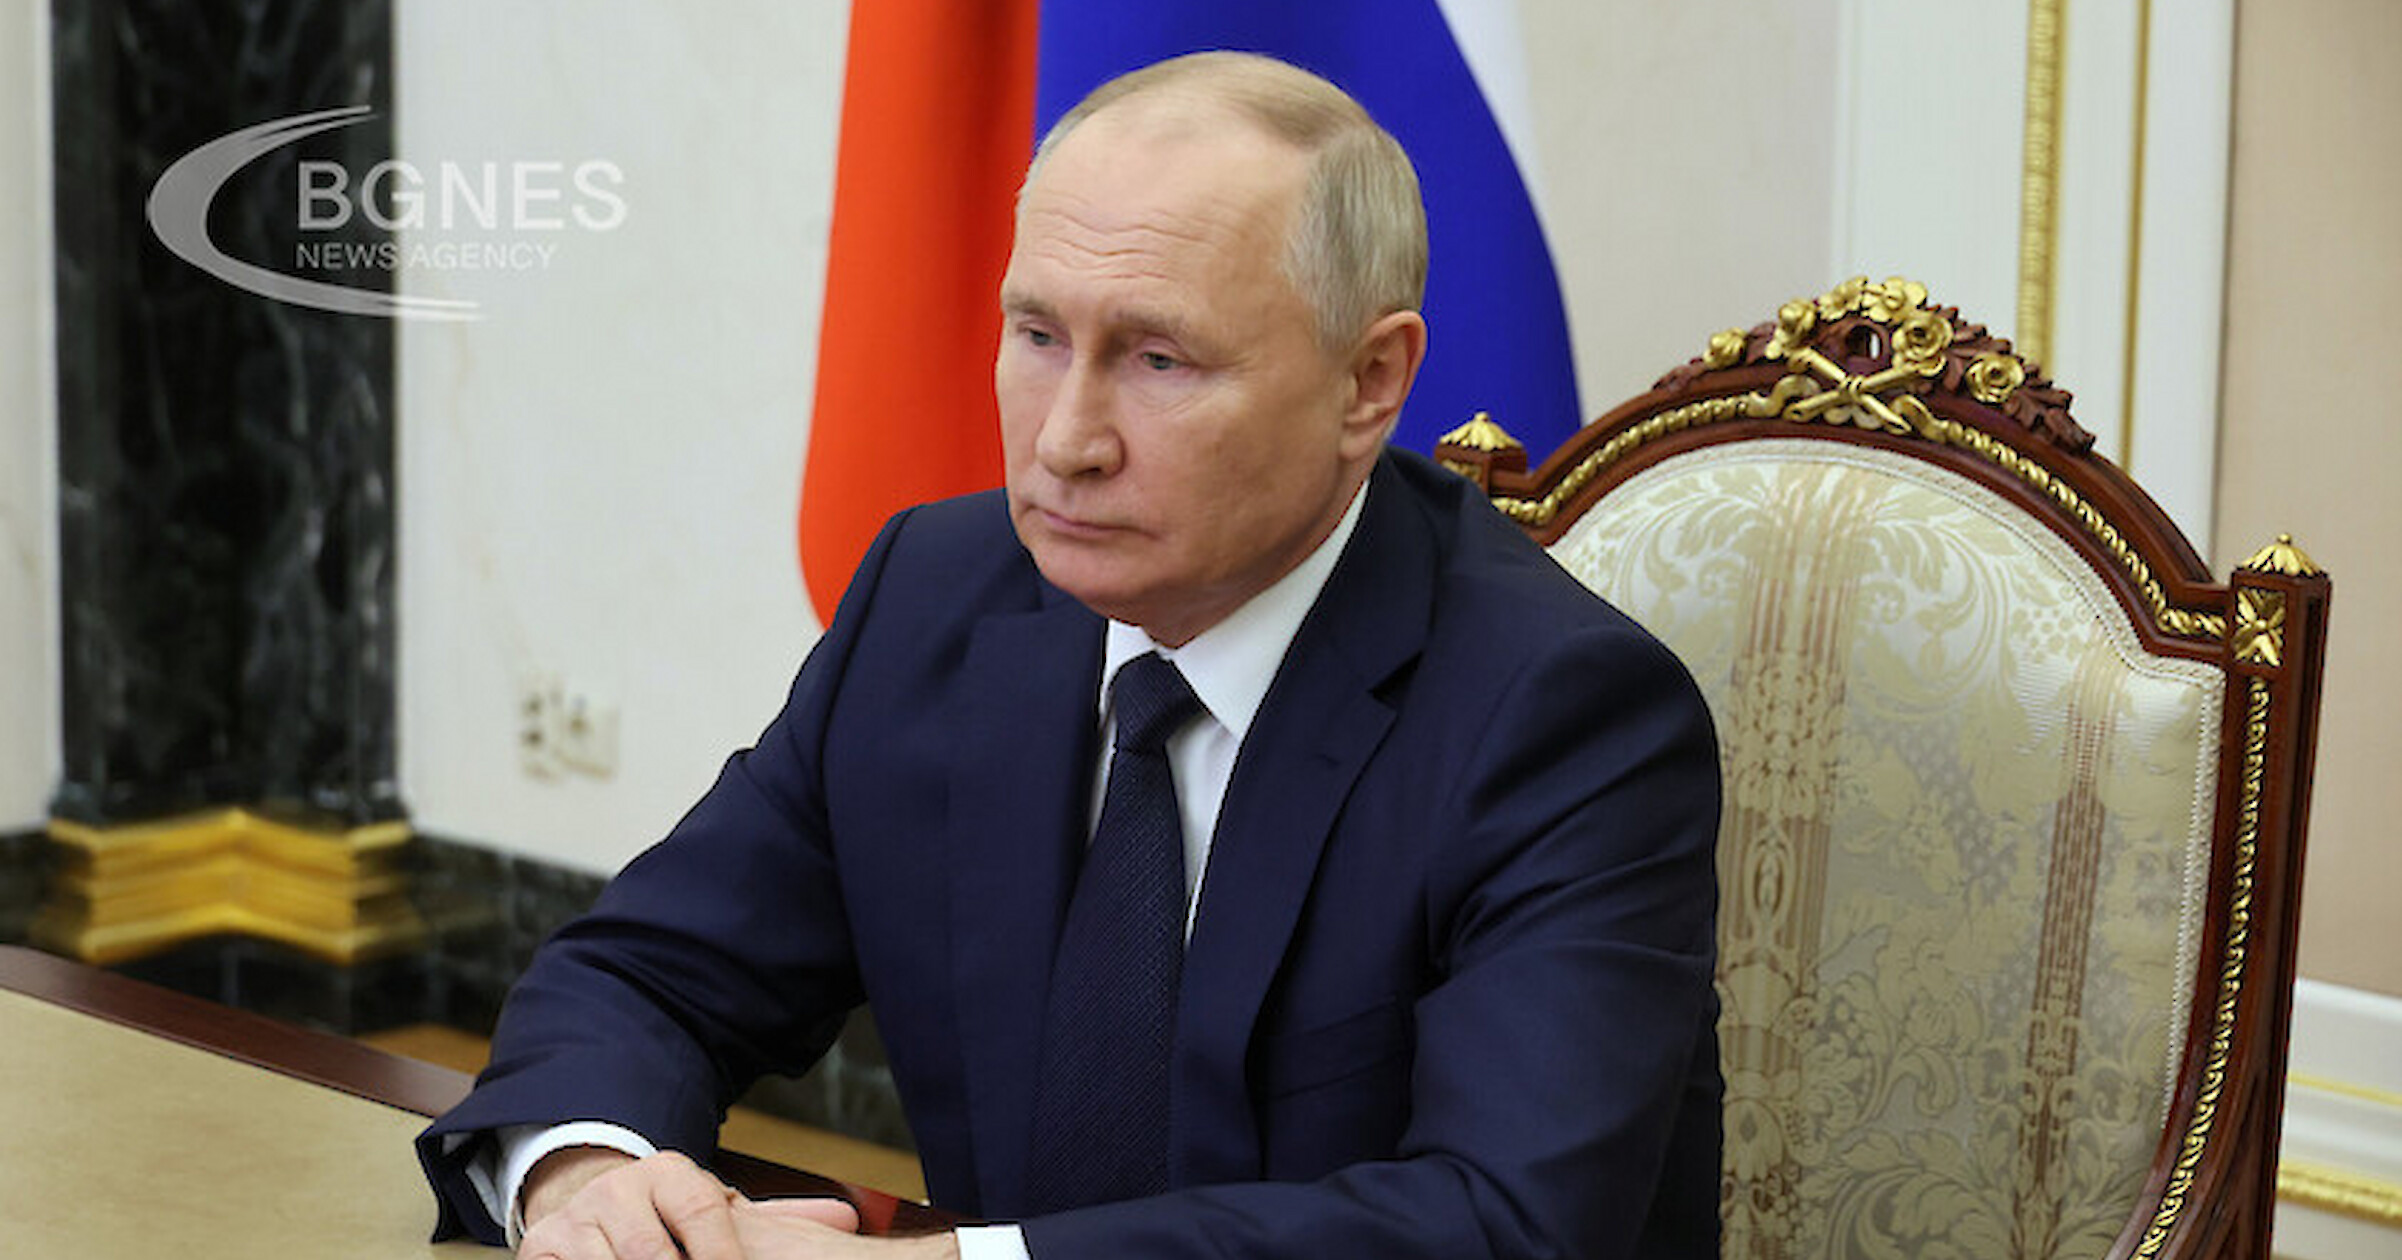 Високо оценената сатирична пиеса озаглавена Хага която представя президента Владимир